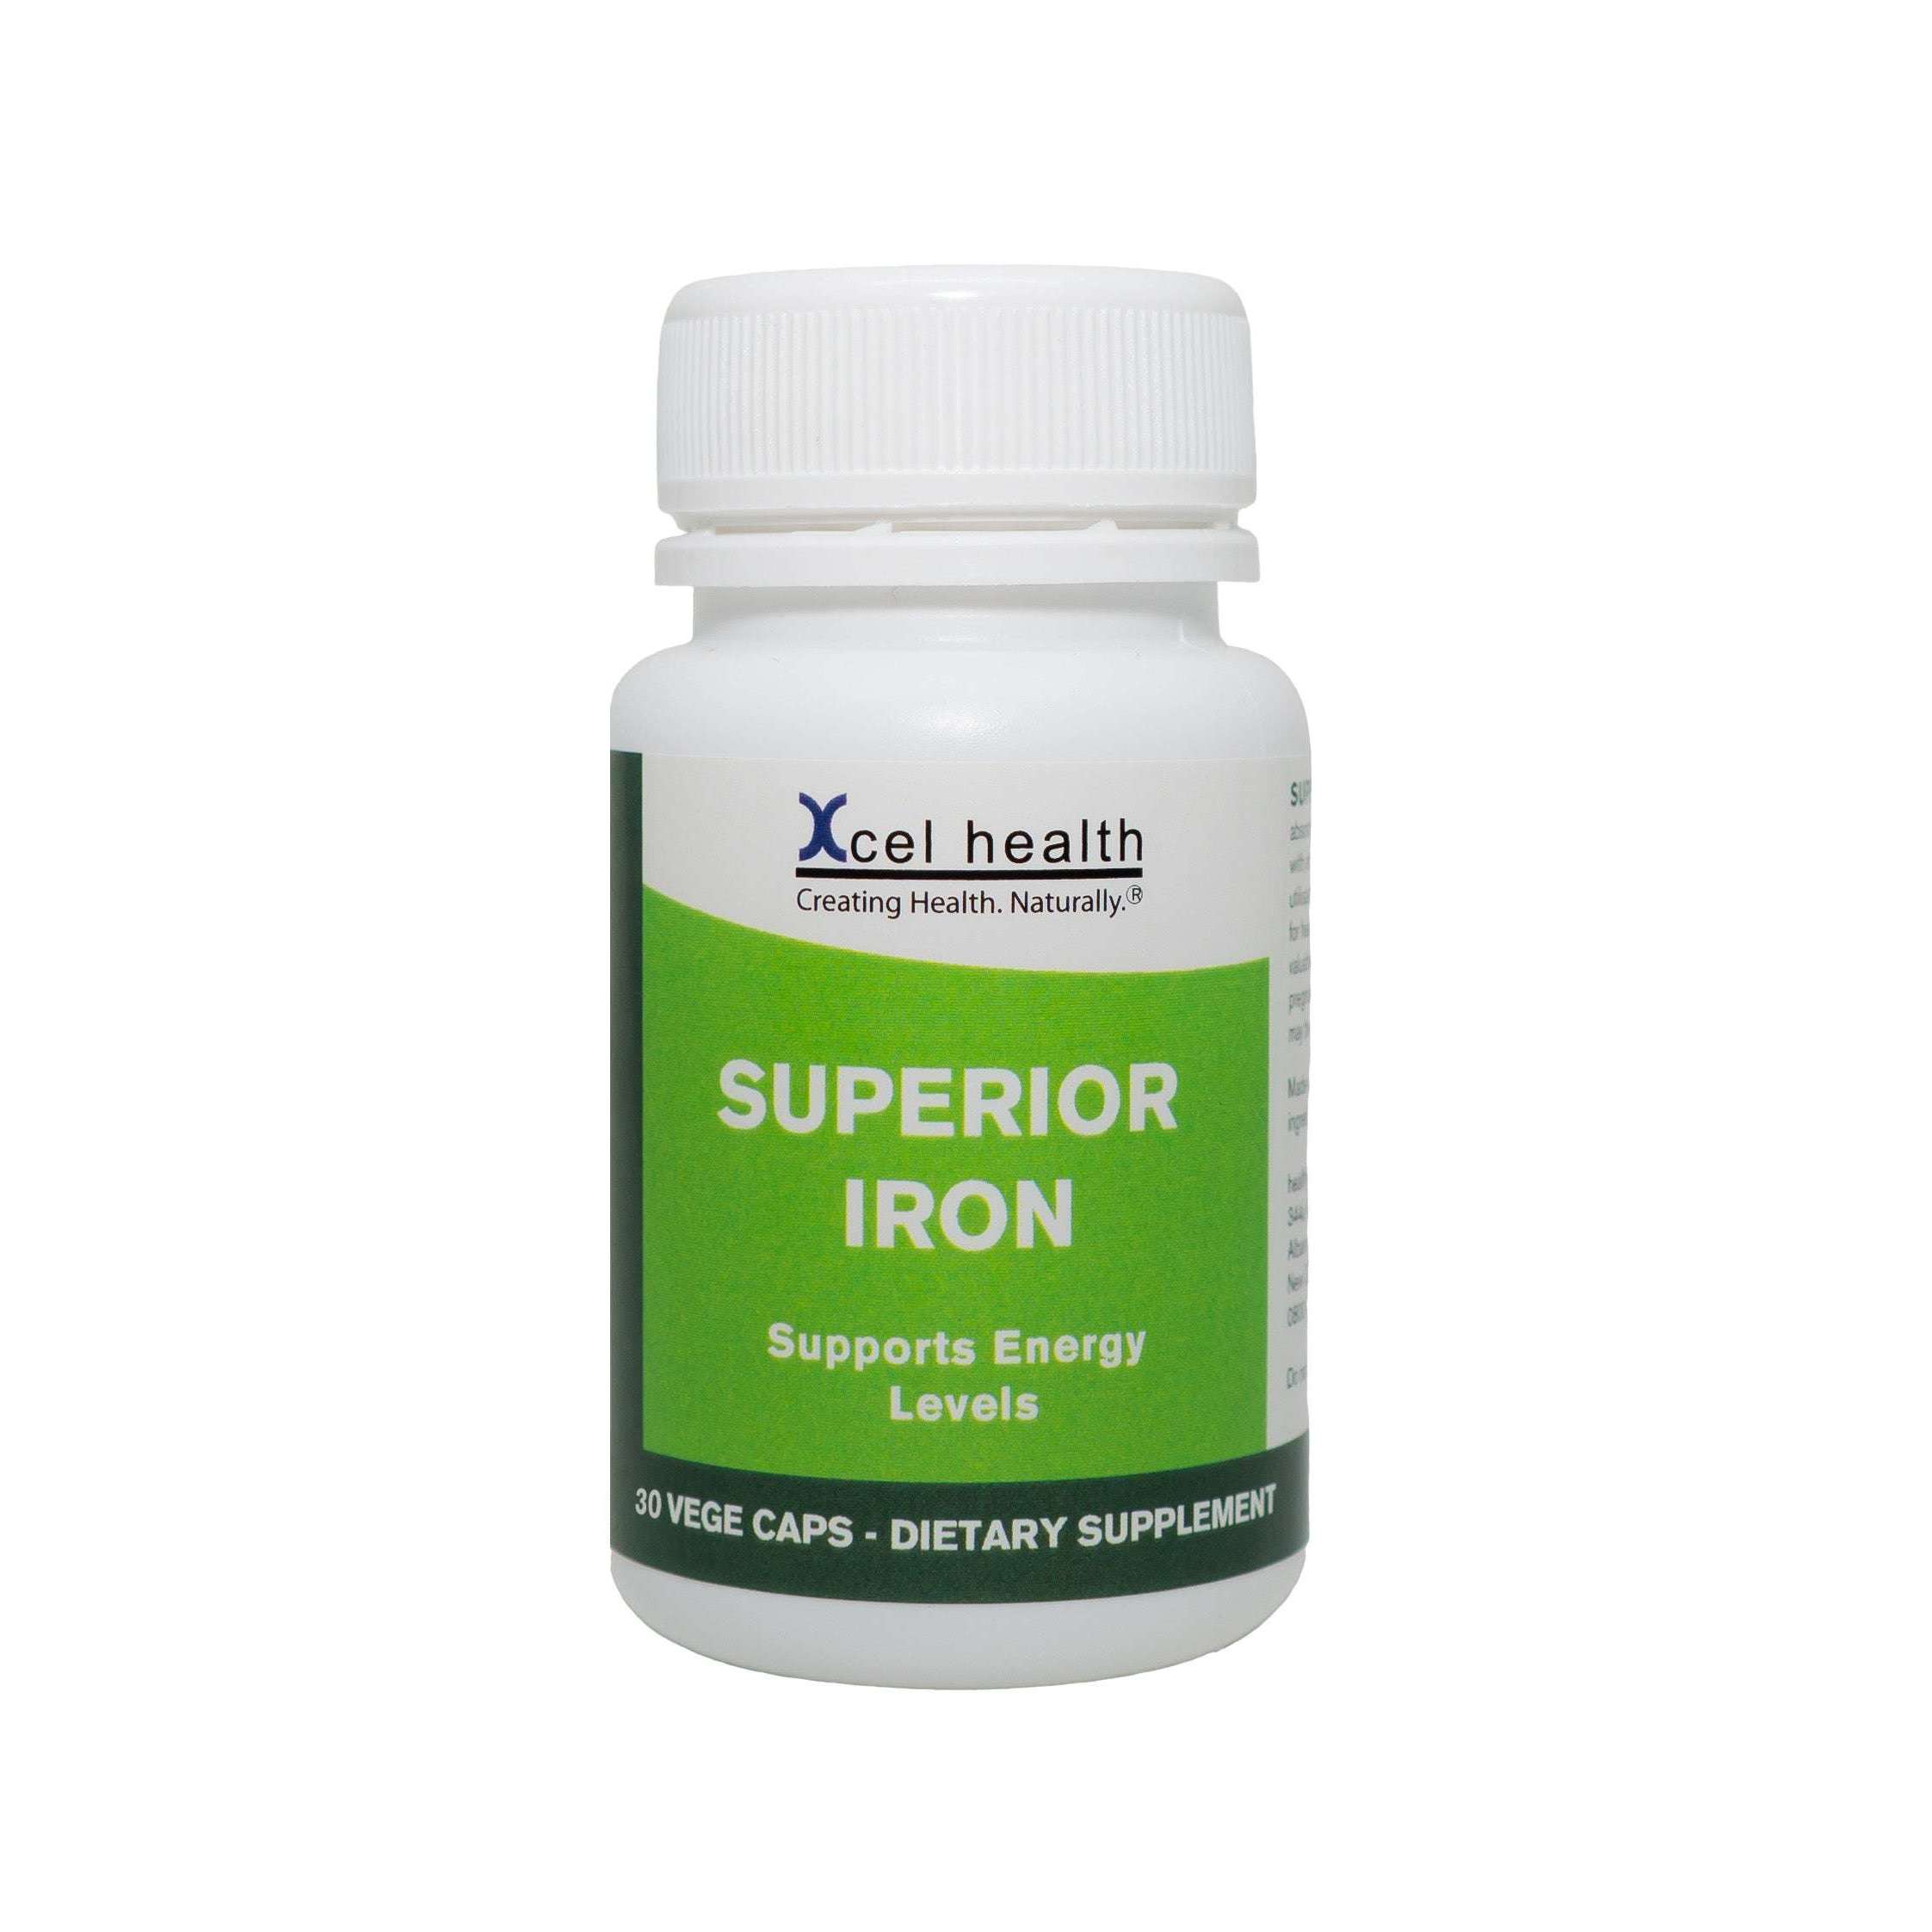 Superior Iron